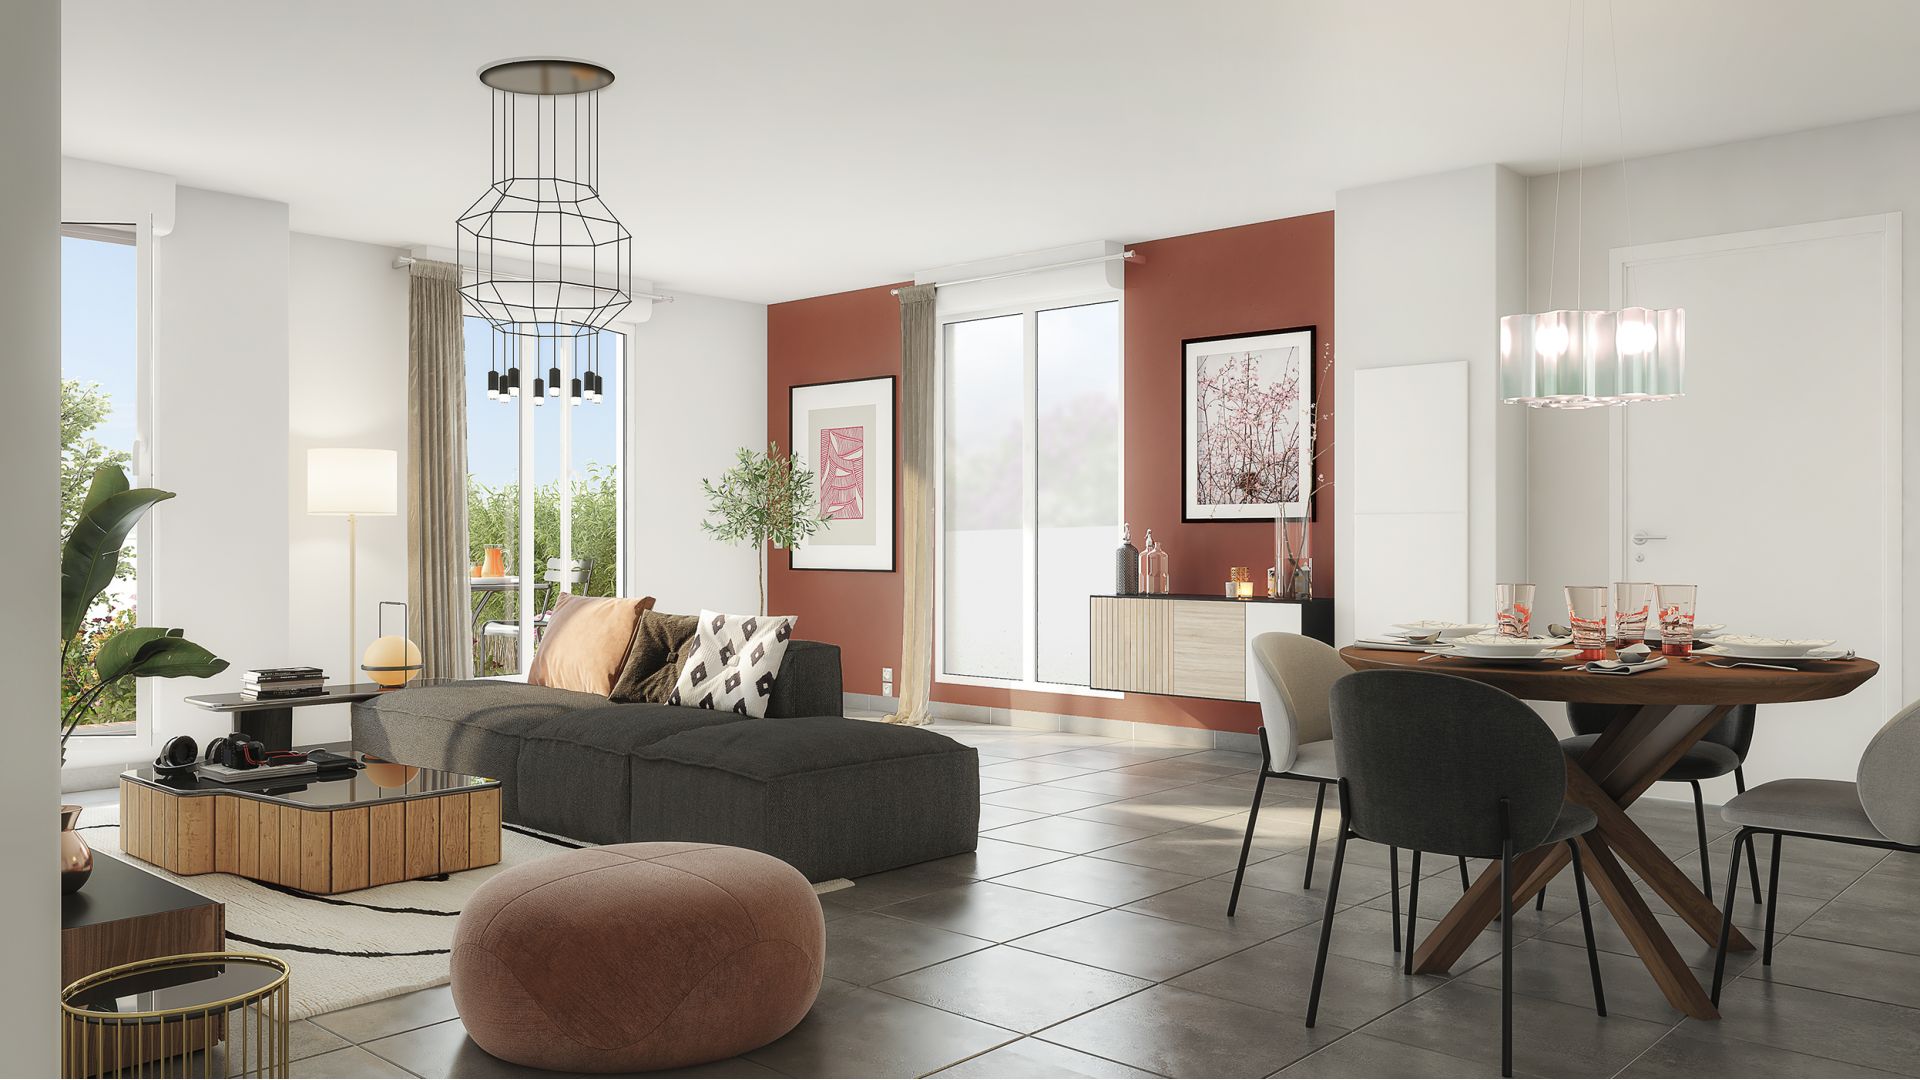 Greencity Immobilier - Villa Mermoz - achat appartements du T1 au T4 - Villemomble 93250 - vue intérieure